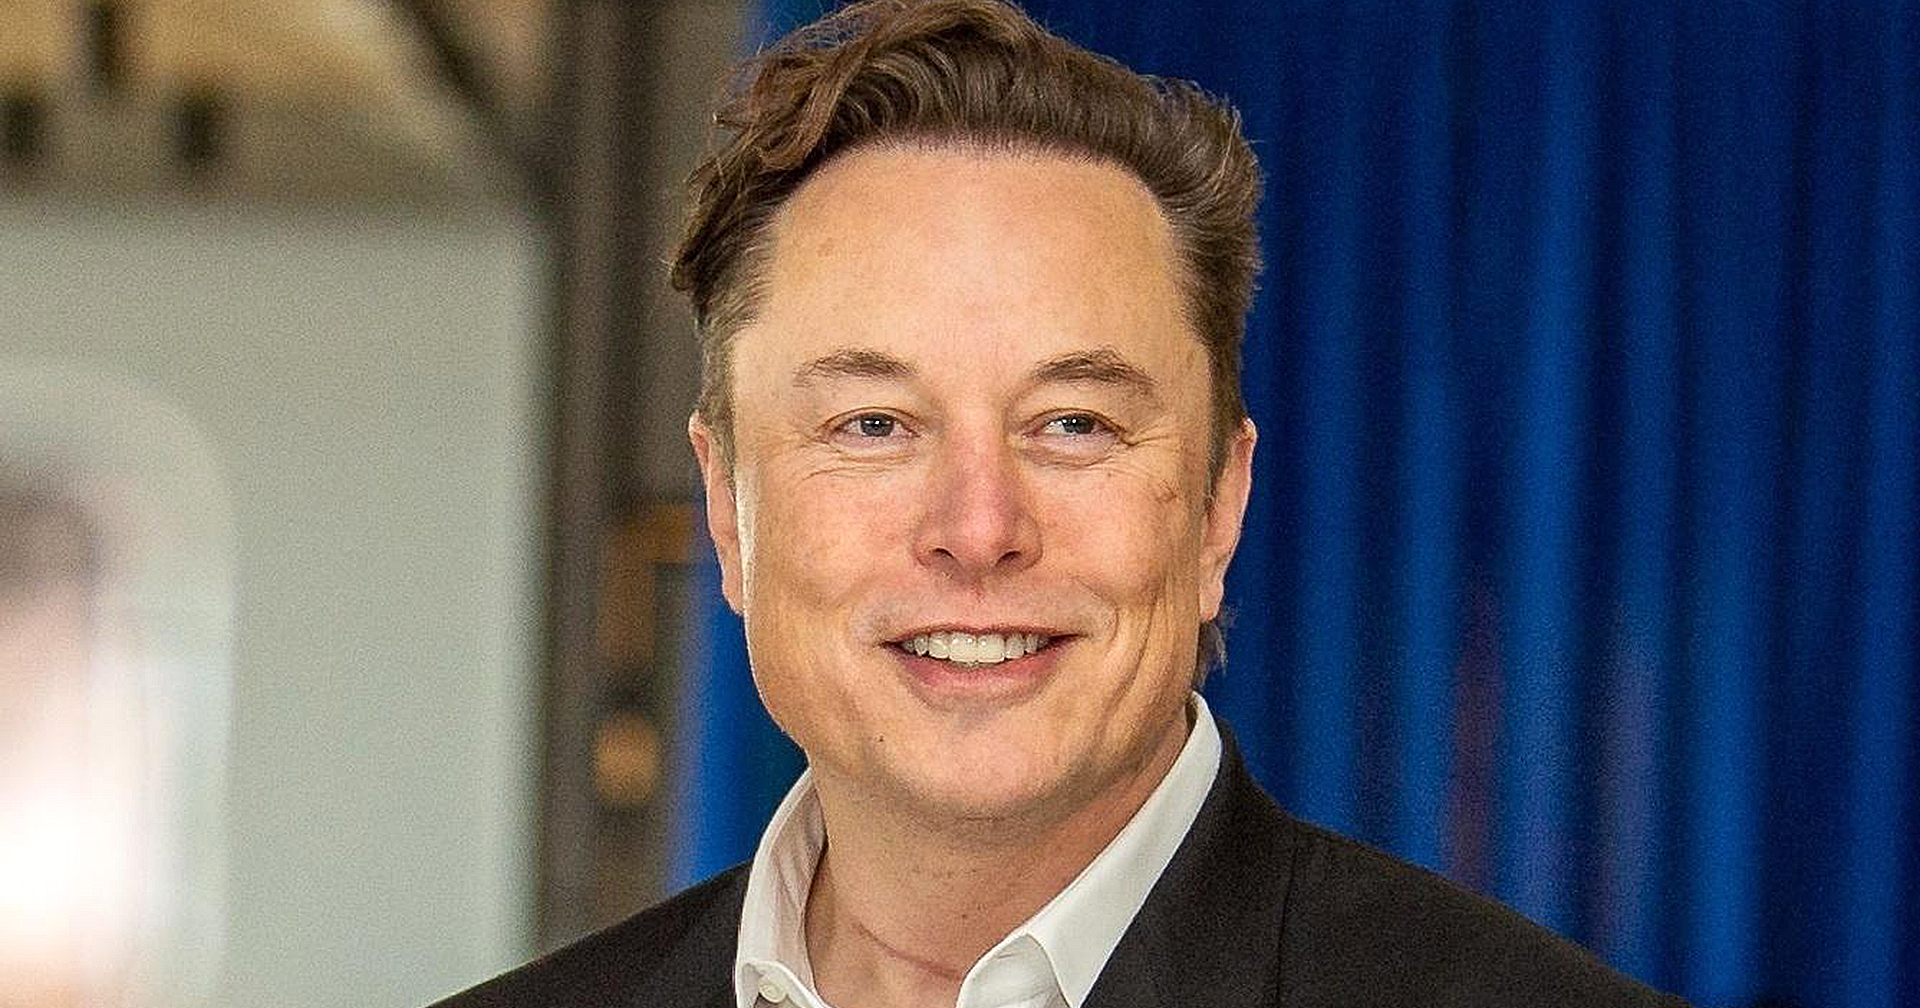 Elon Musk ขอให้พนักงานยอมรับ Twitter ยุคใหม่ที่ฮาร์ดคอร์สุด ๆ มิฉะนั้นอาจตกงานได้